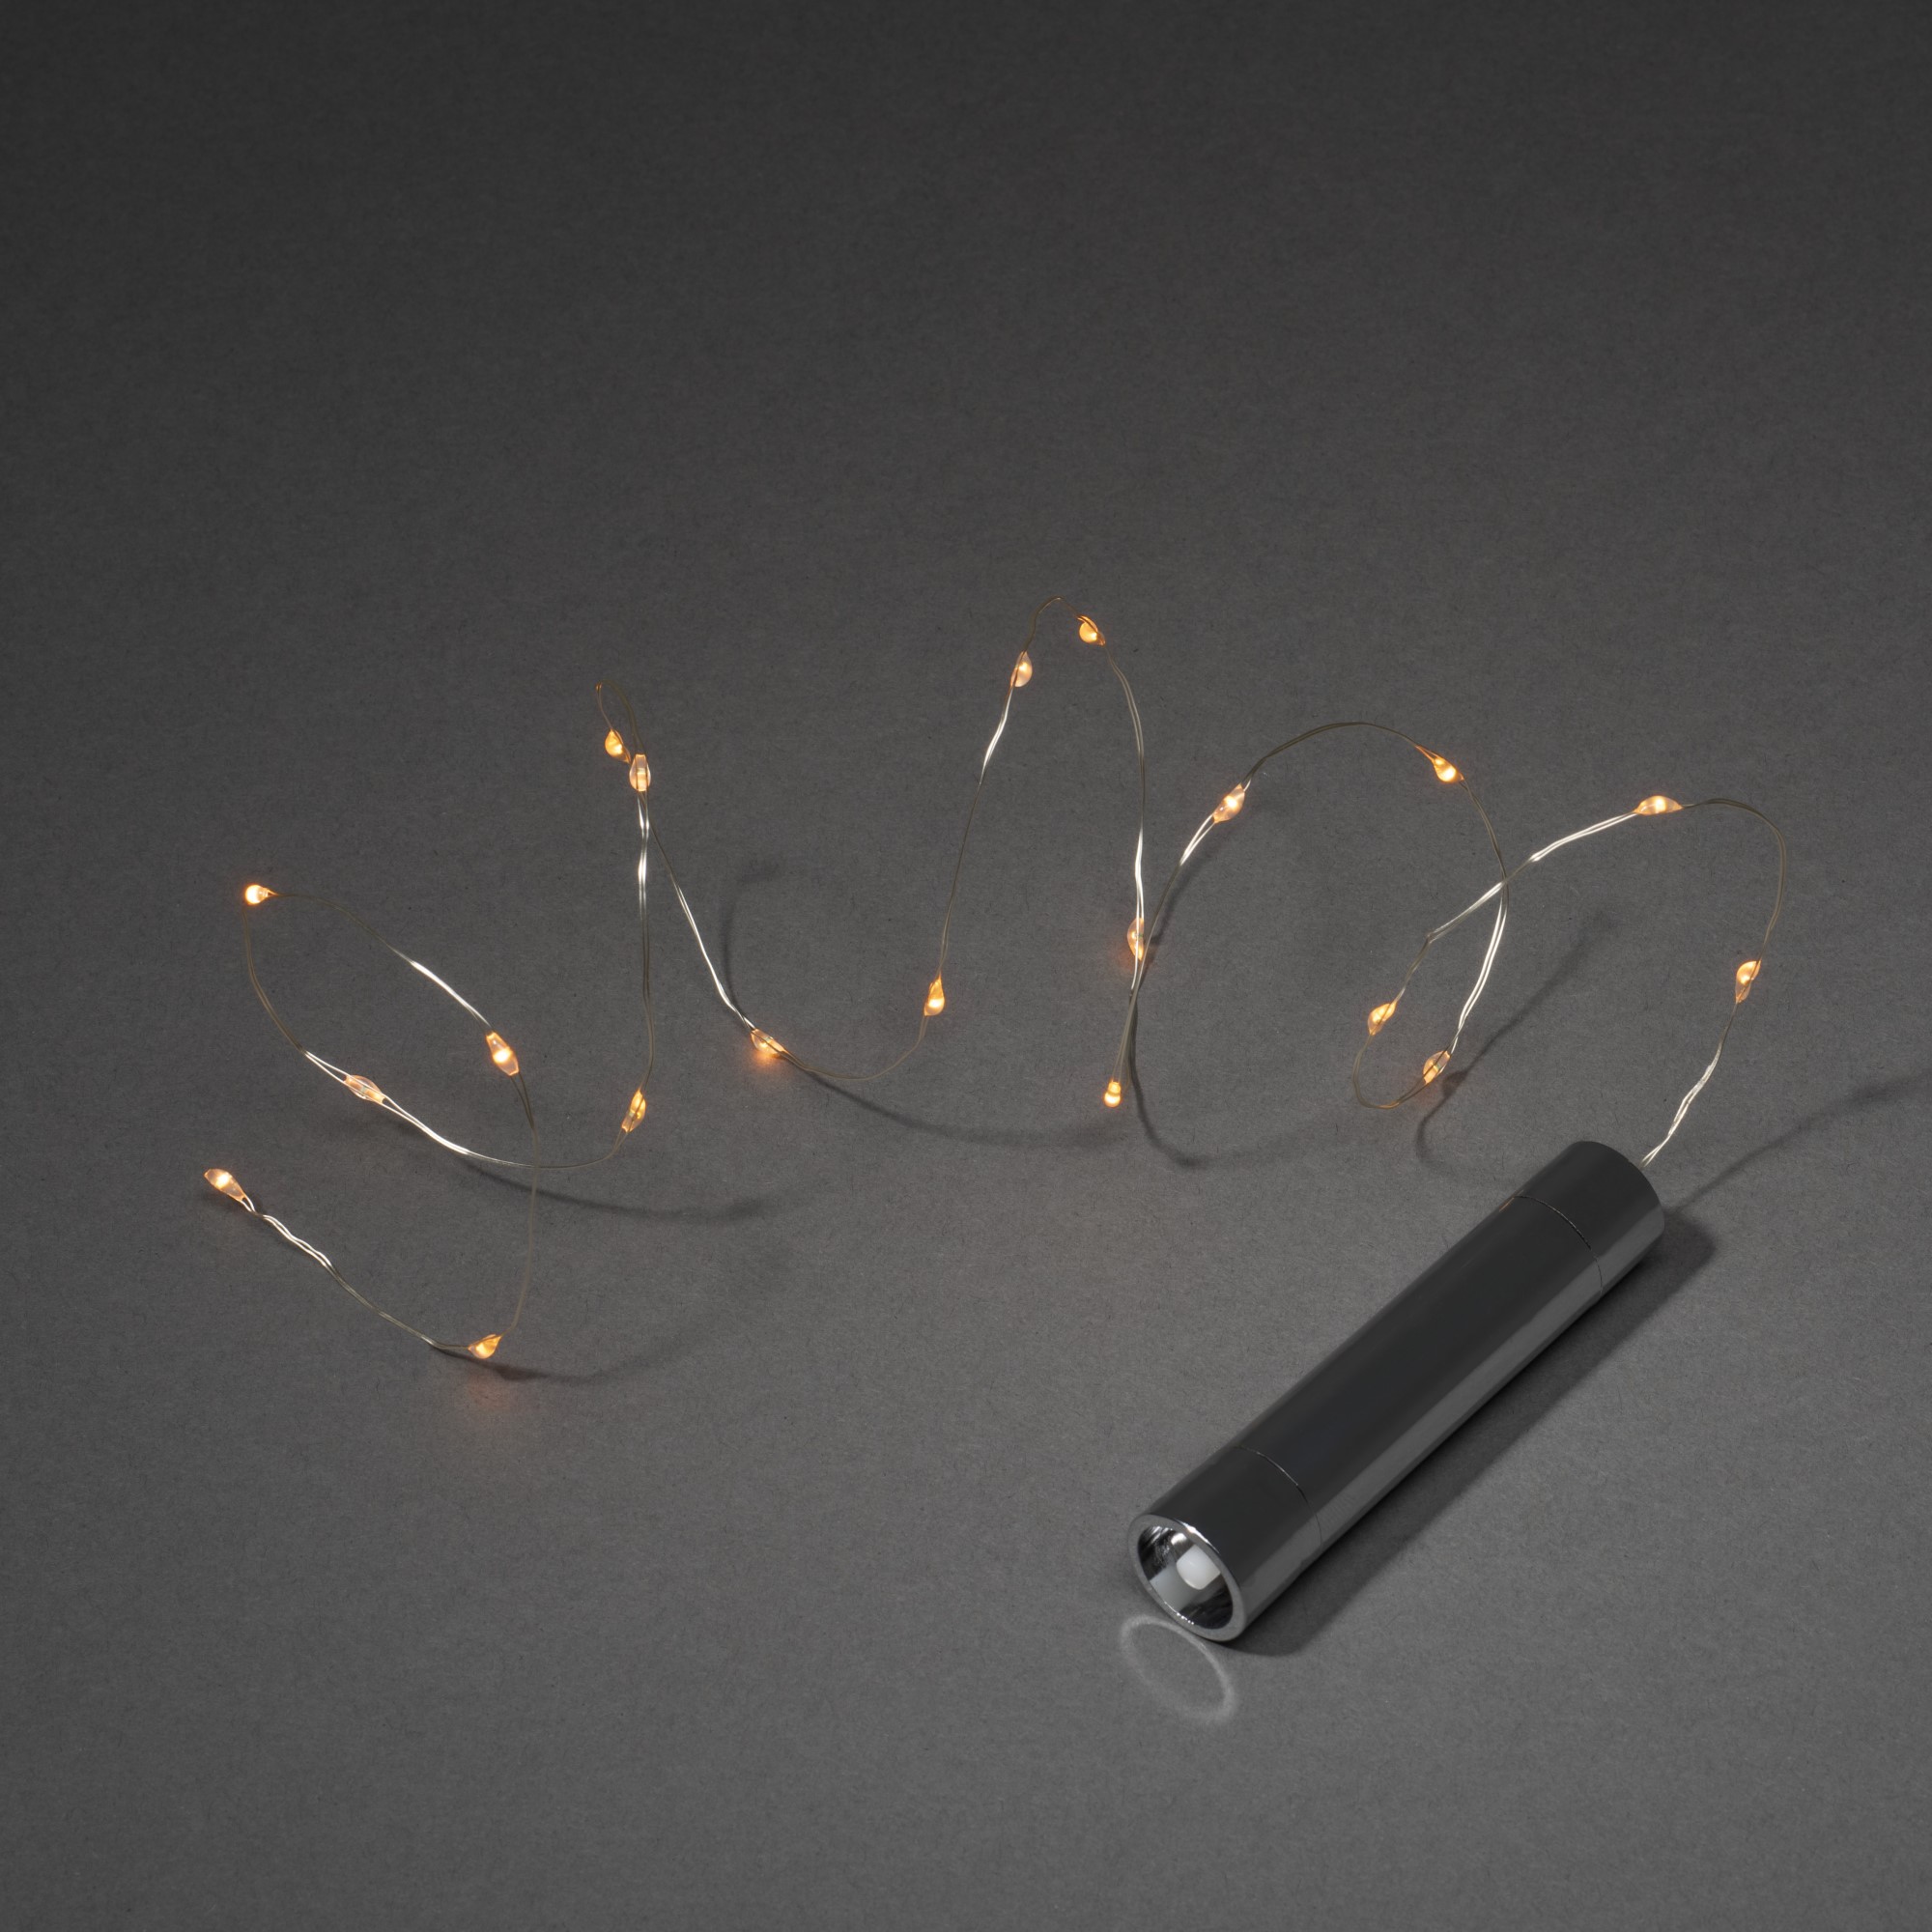 Konstsmide LED Micro Light Chain for Bottles, 20 amber LEDs, battery operated